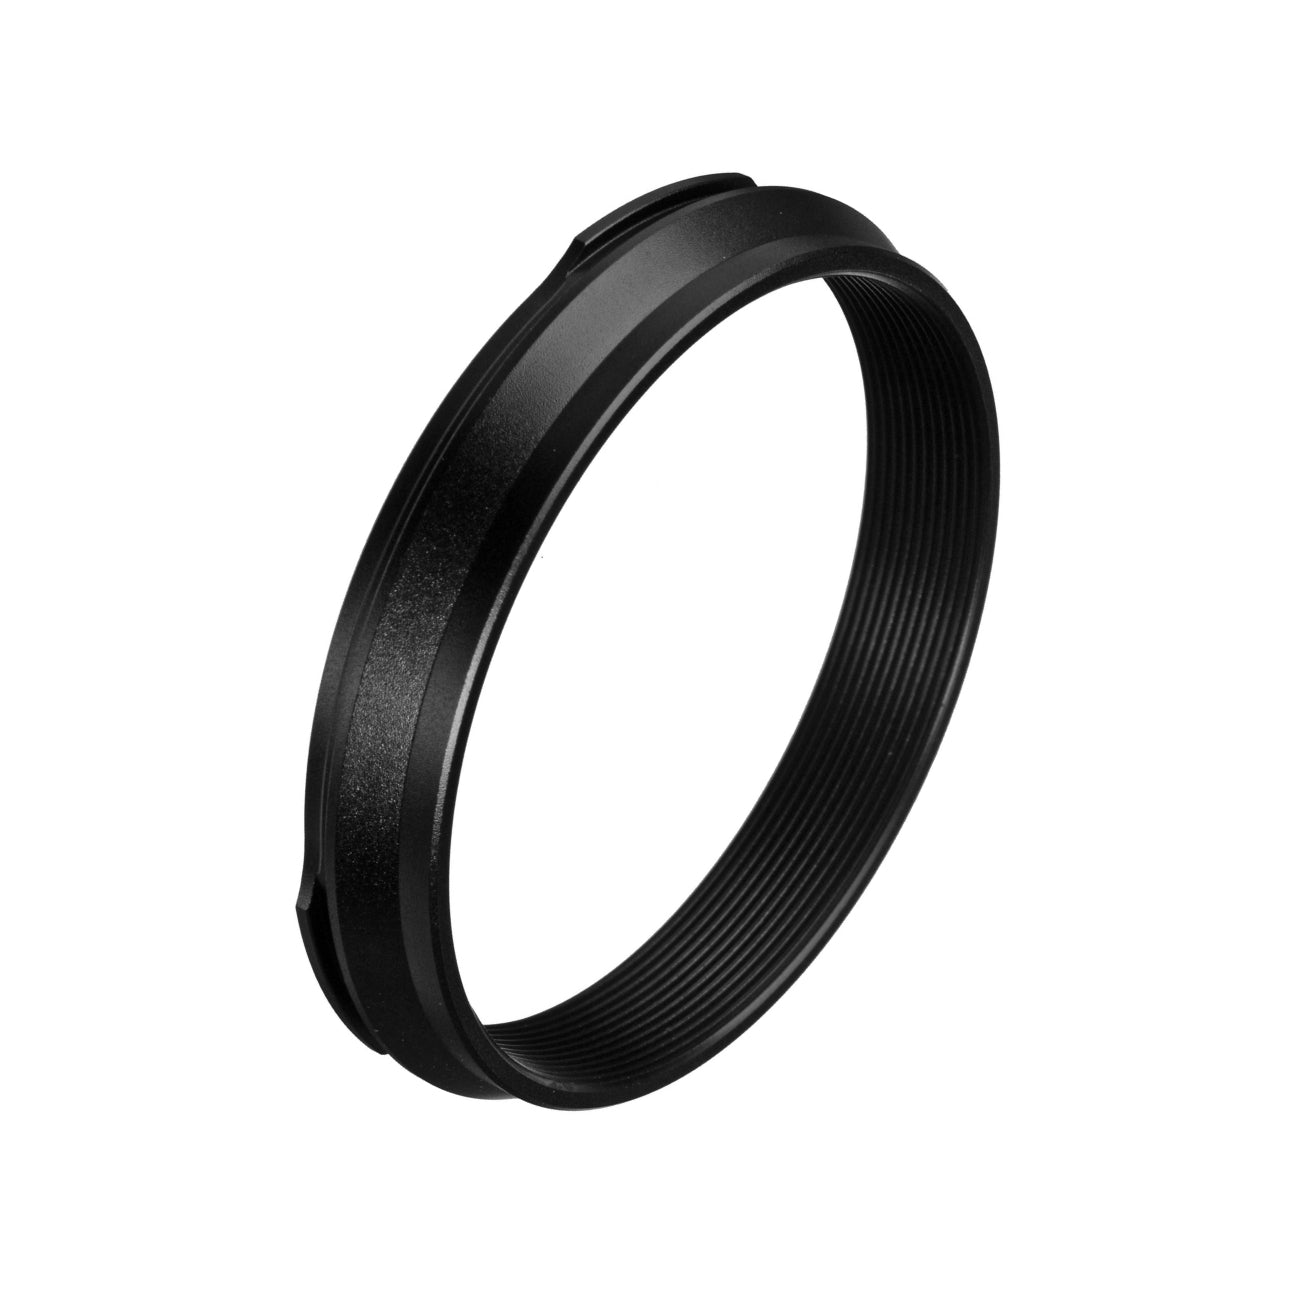 Fujifilm AR-X100 Adapter Ring (Black)